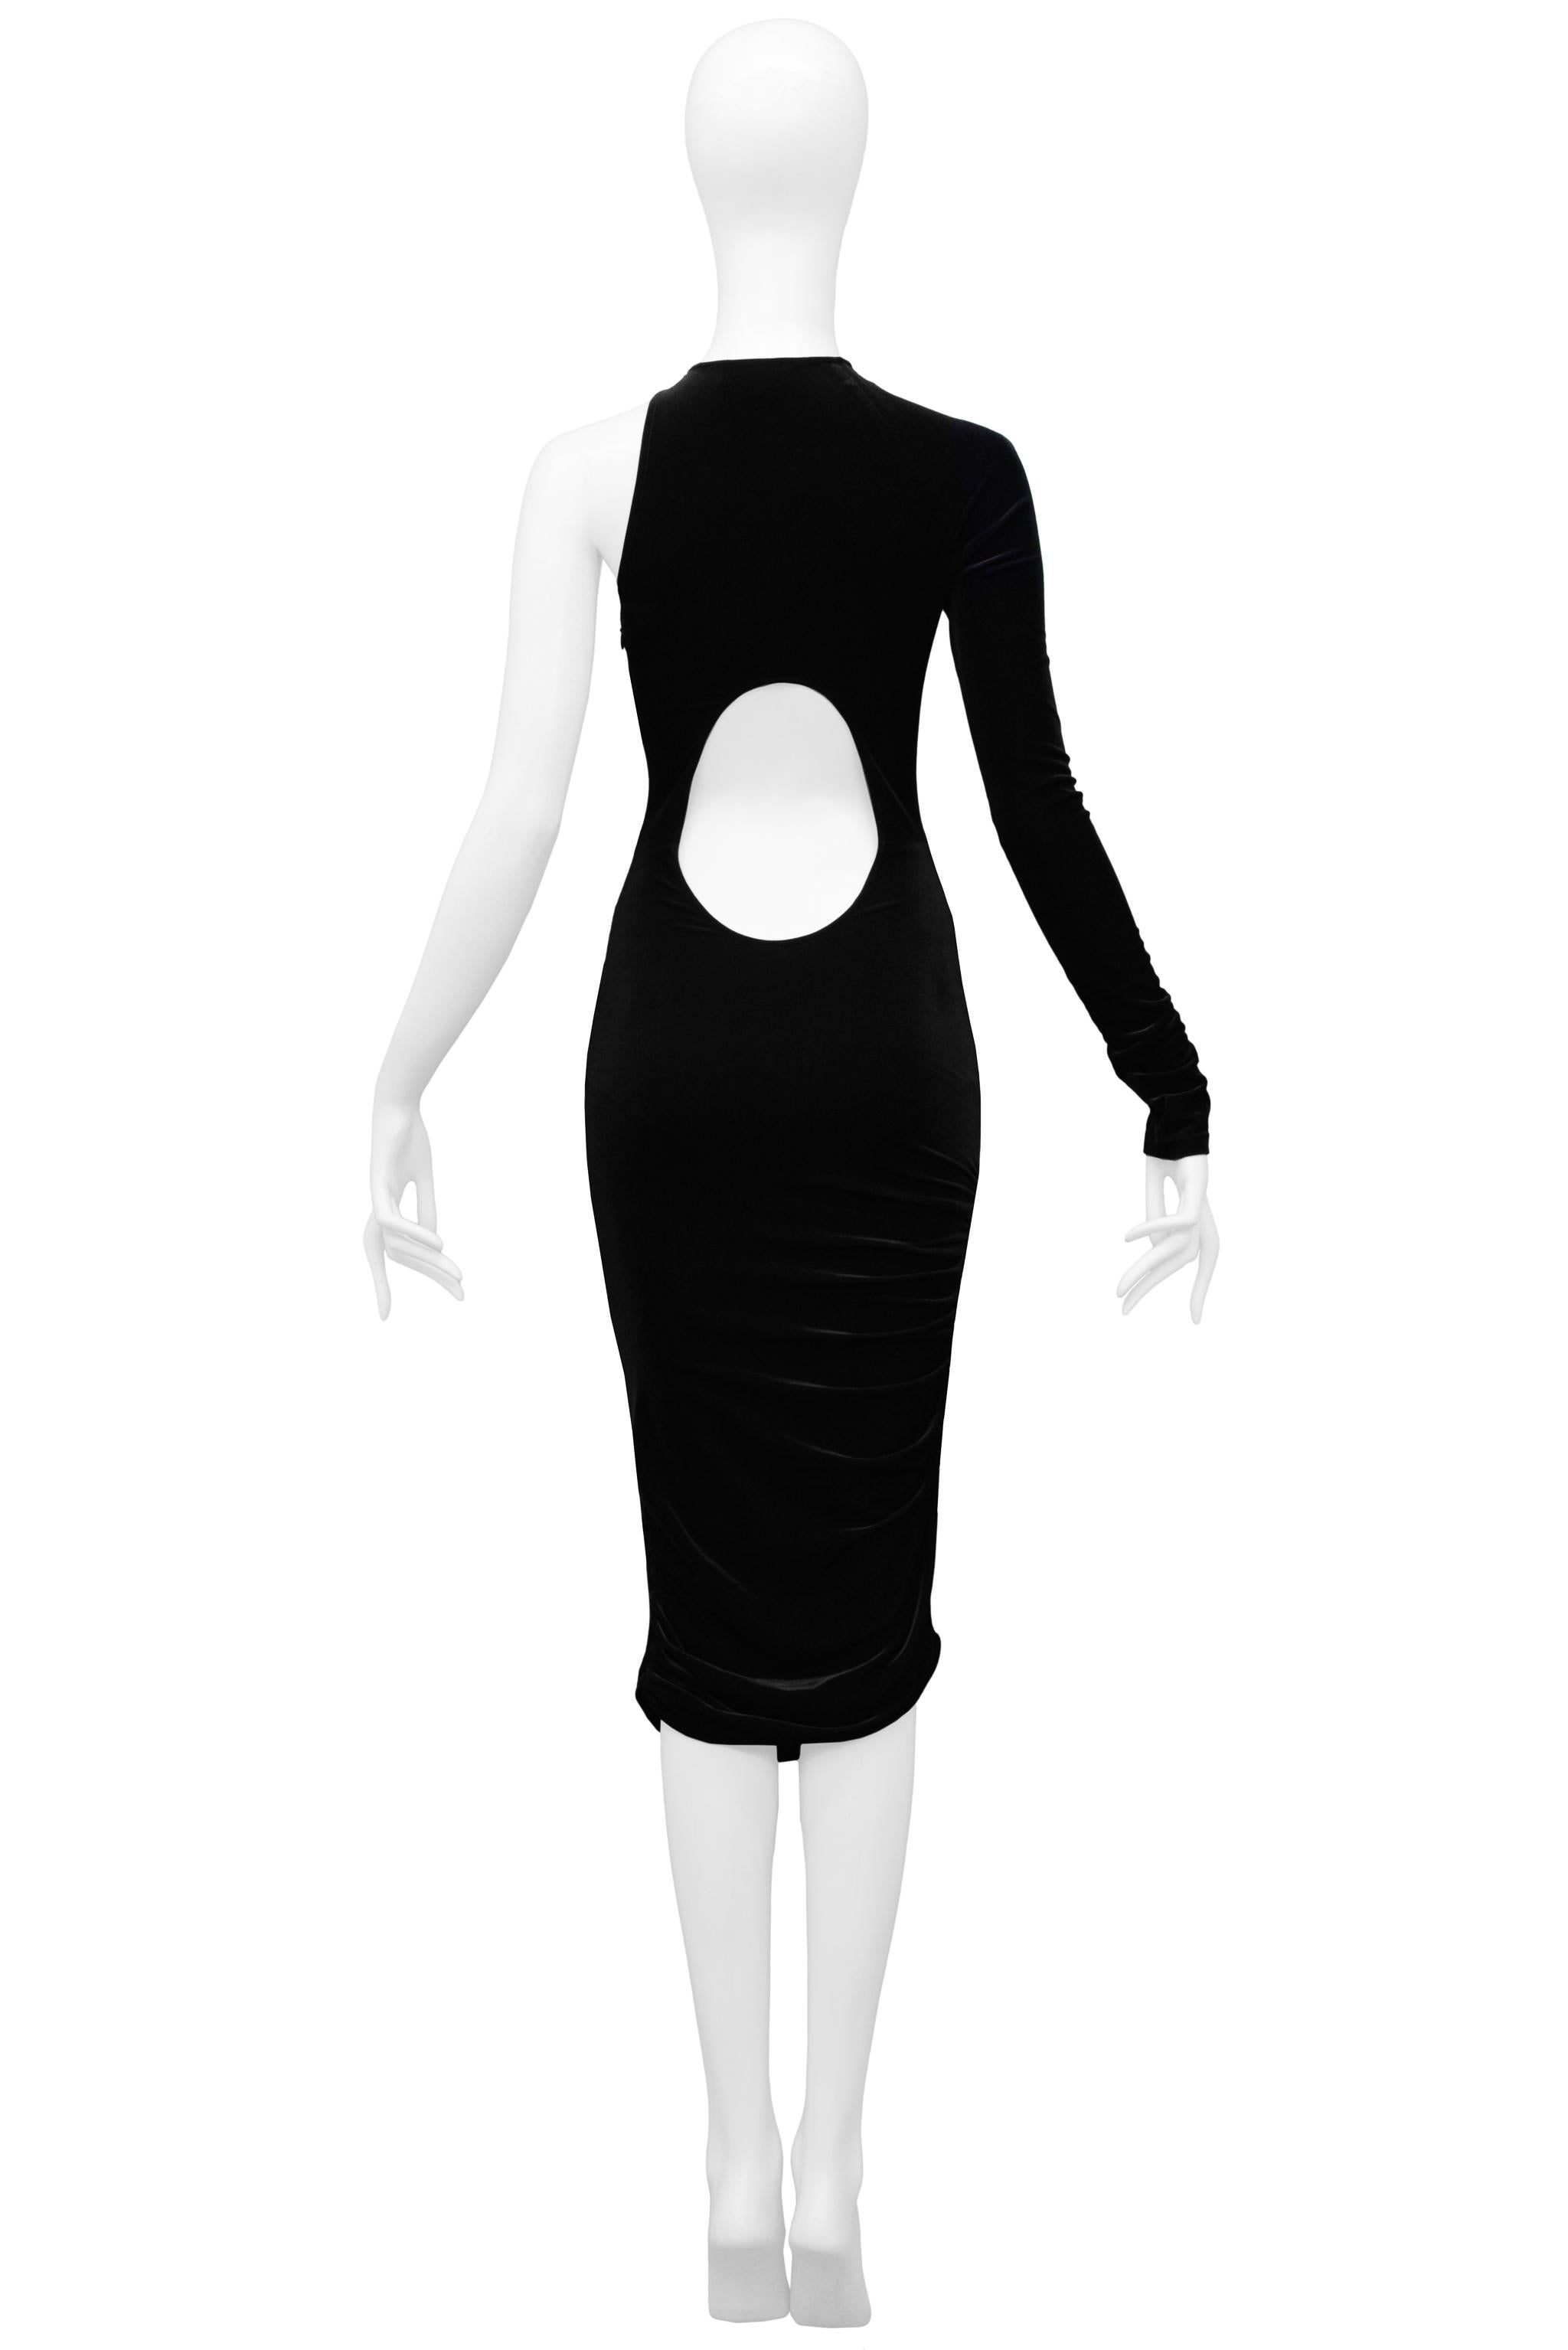 Versace Black Velvet Cutout Dress 2004 For Sale 1